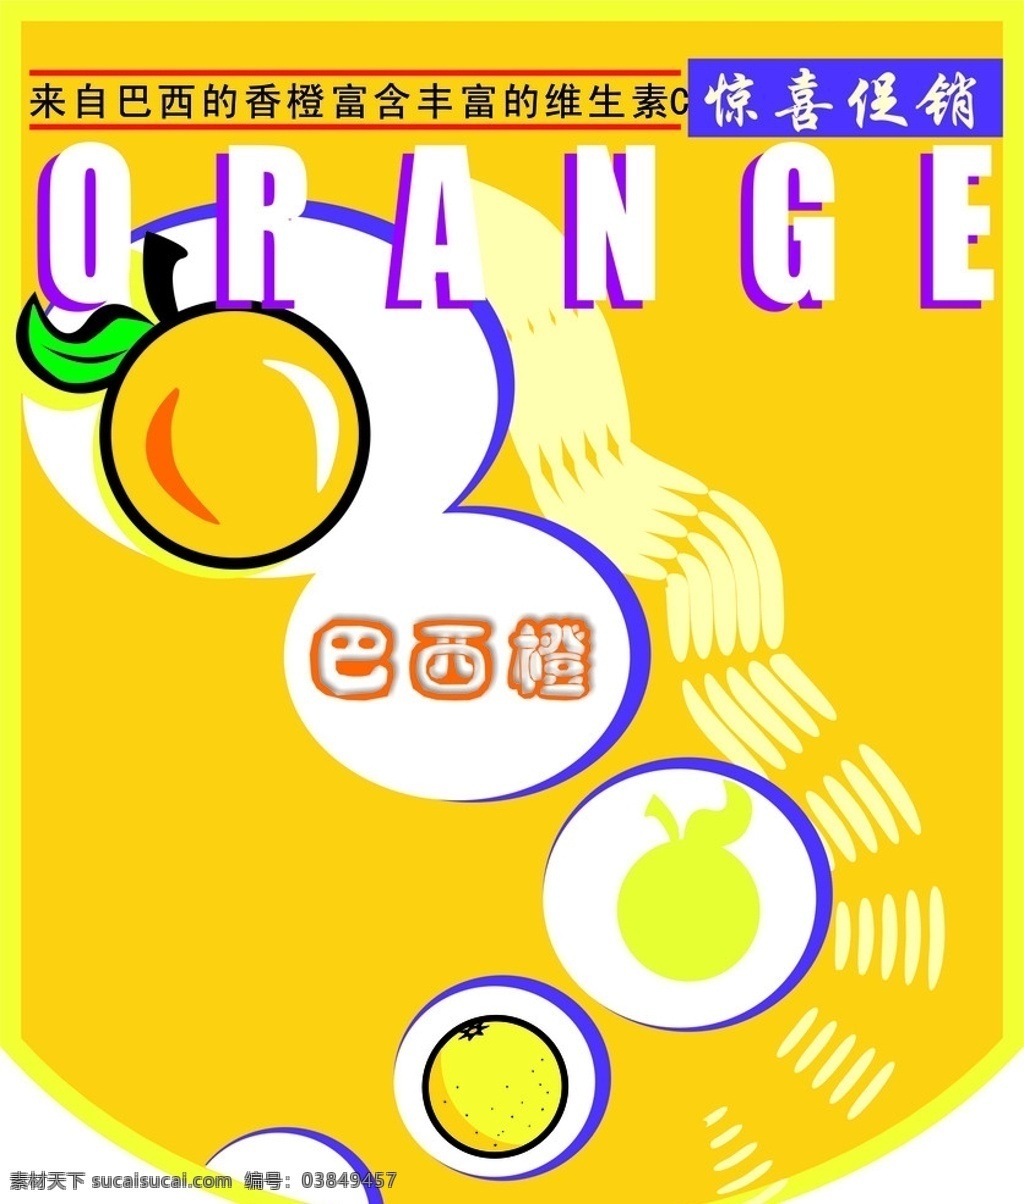 巴西 橙 挂 旗 广告 巴西橙矢量图 英文 宣传单 矢量